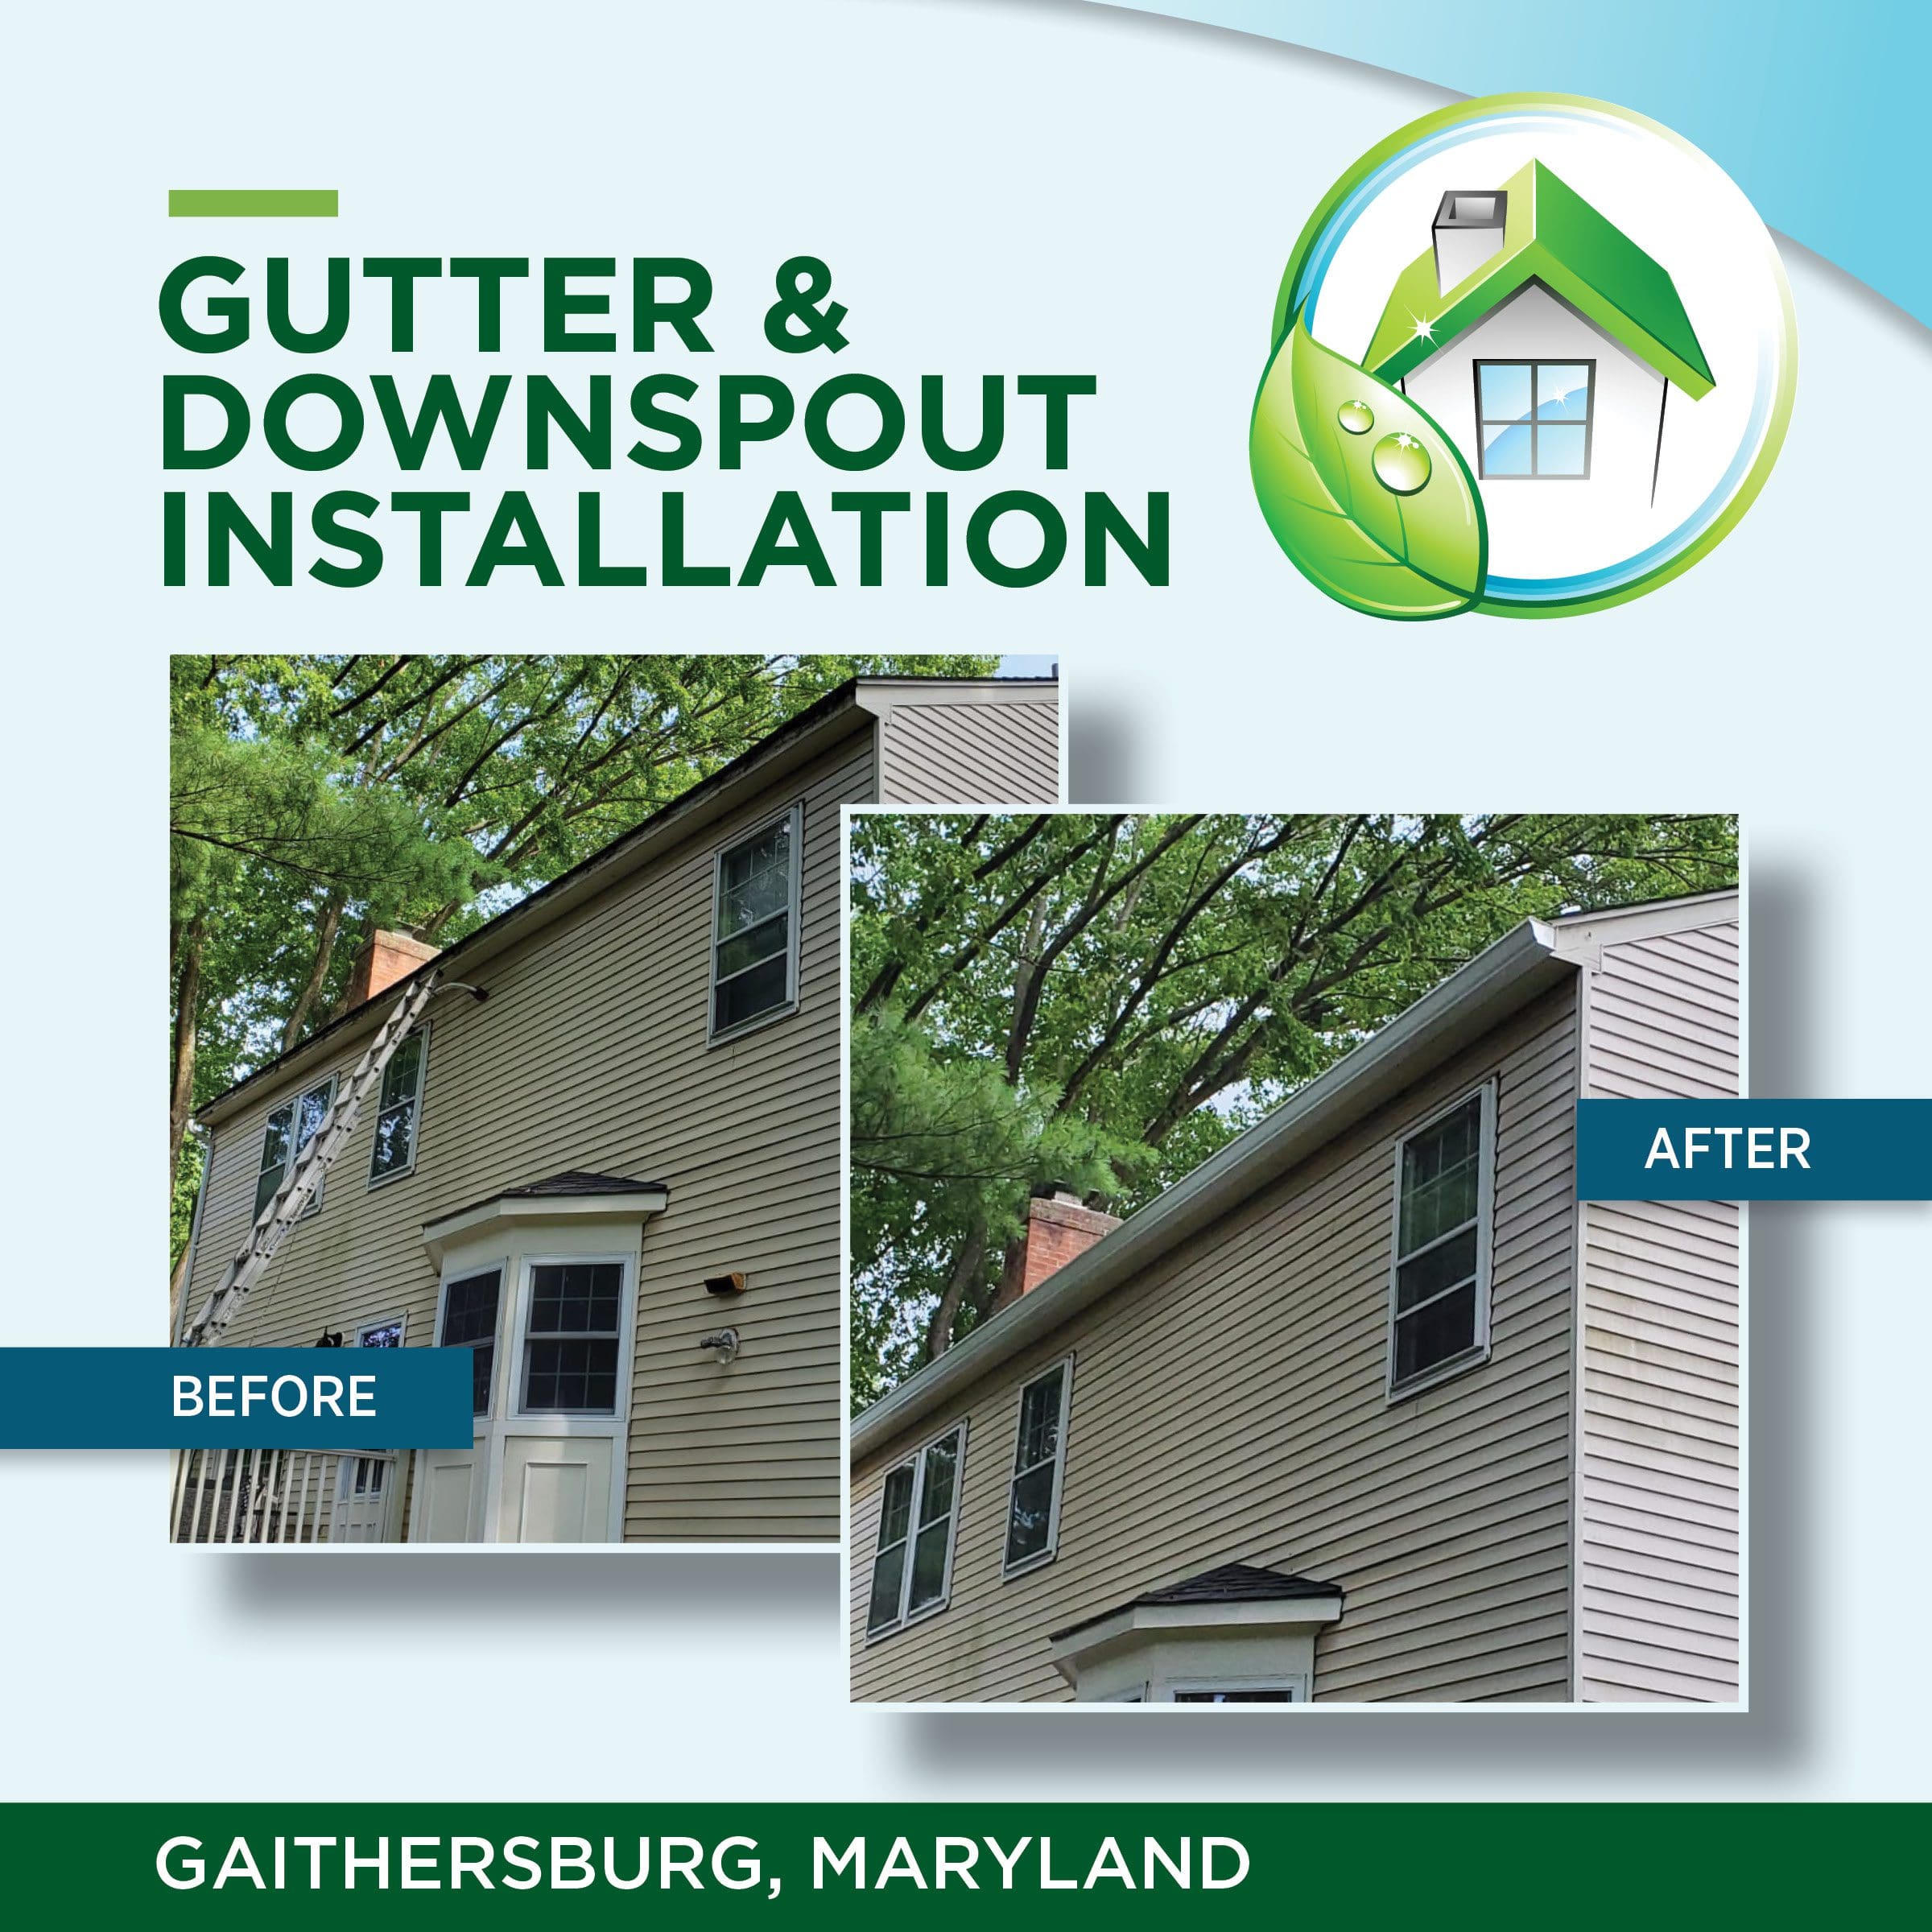 Gutter & downspout installation Gaithersburg MD